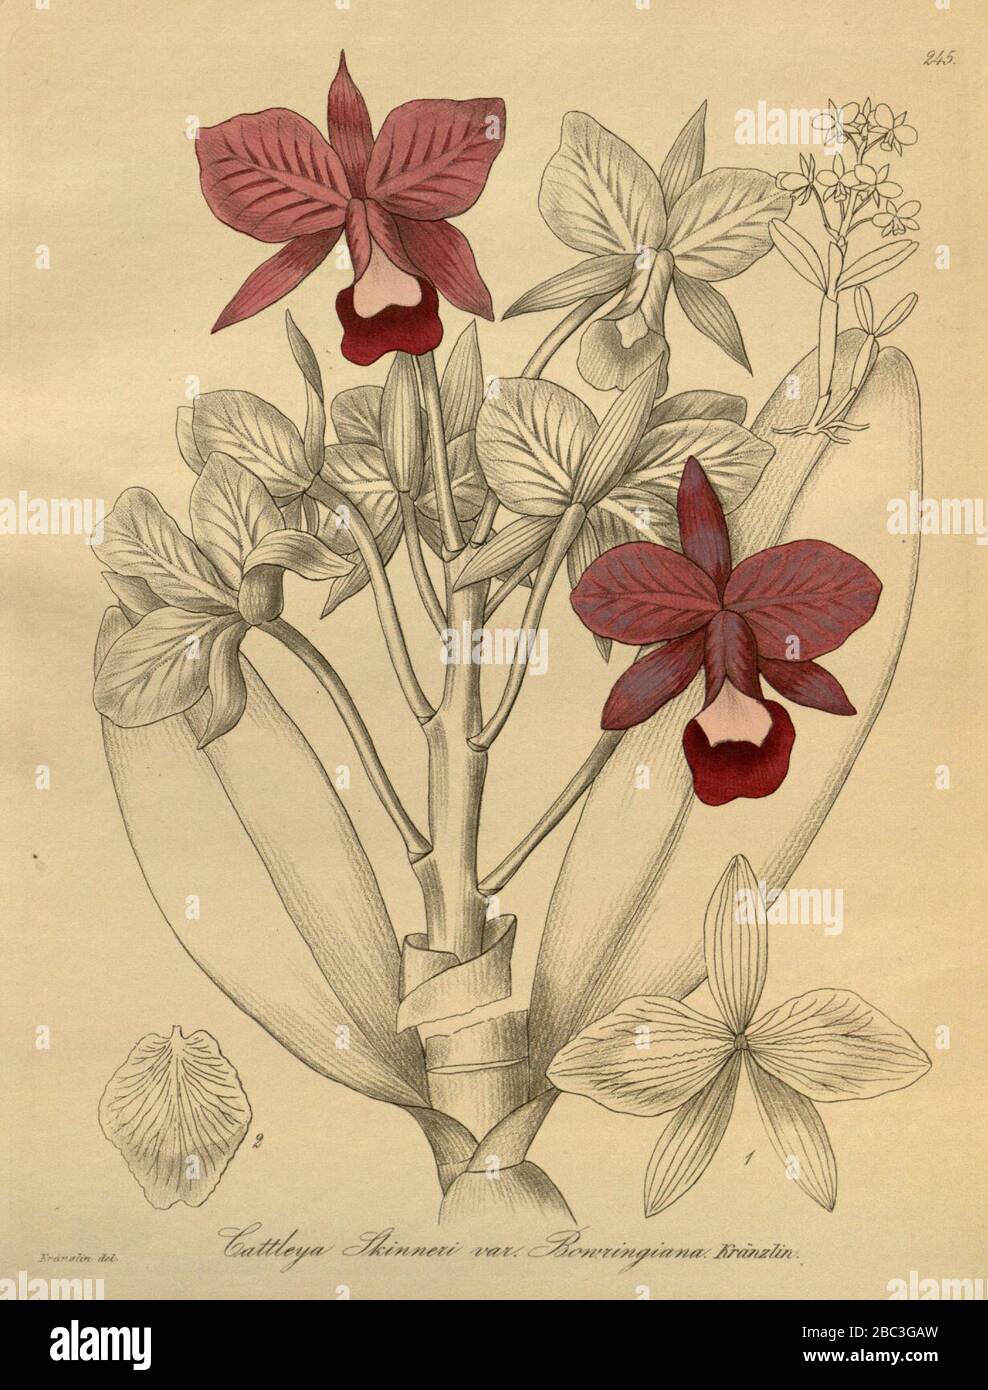 Guarianthe bowringiana (as Cattleya skinneri var. bowringiana) - Xenia 3-245 (1892). Stock Photo